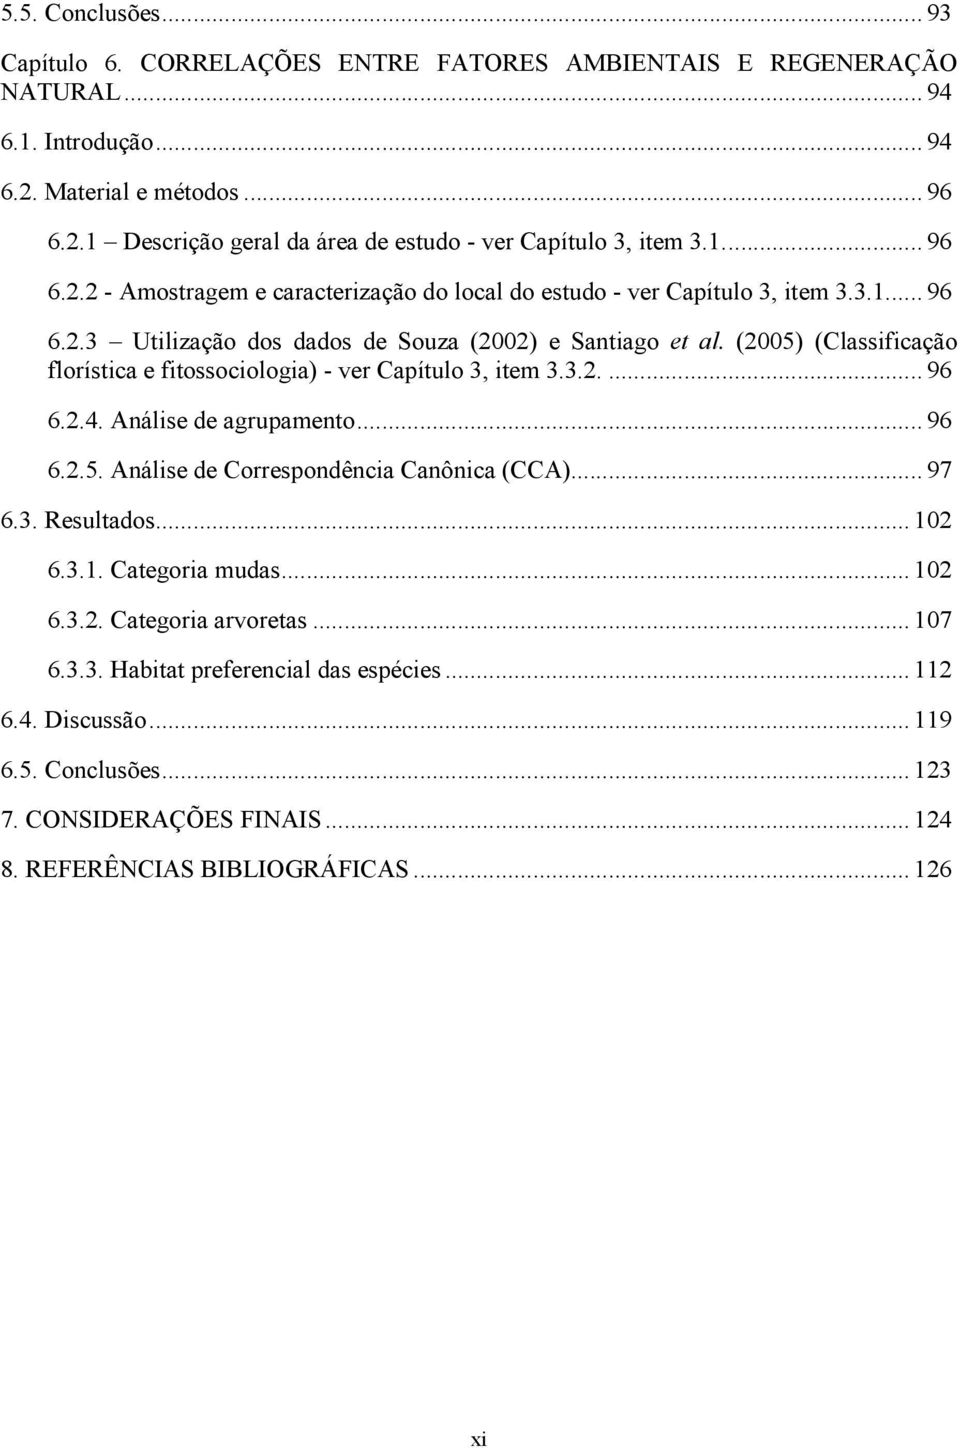 (2005) (Classificação florística e fitossociologia) - ver Capítulo 3, item 3.3.2.... 96 6.2.4. Análise de agrupamento... 96 6.2.5. Análise de Correspondência Canônica (CCA)... 97 6.3. Resultados.